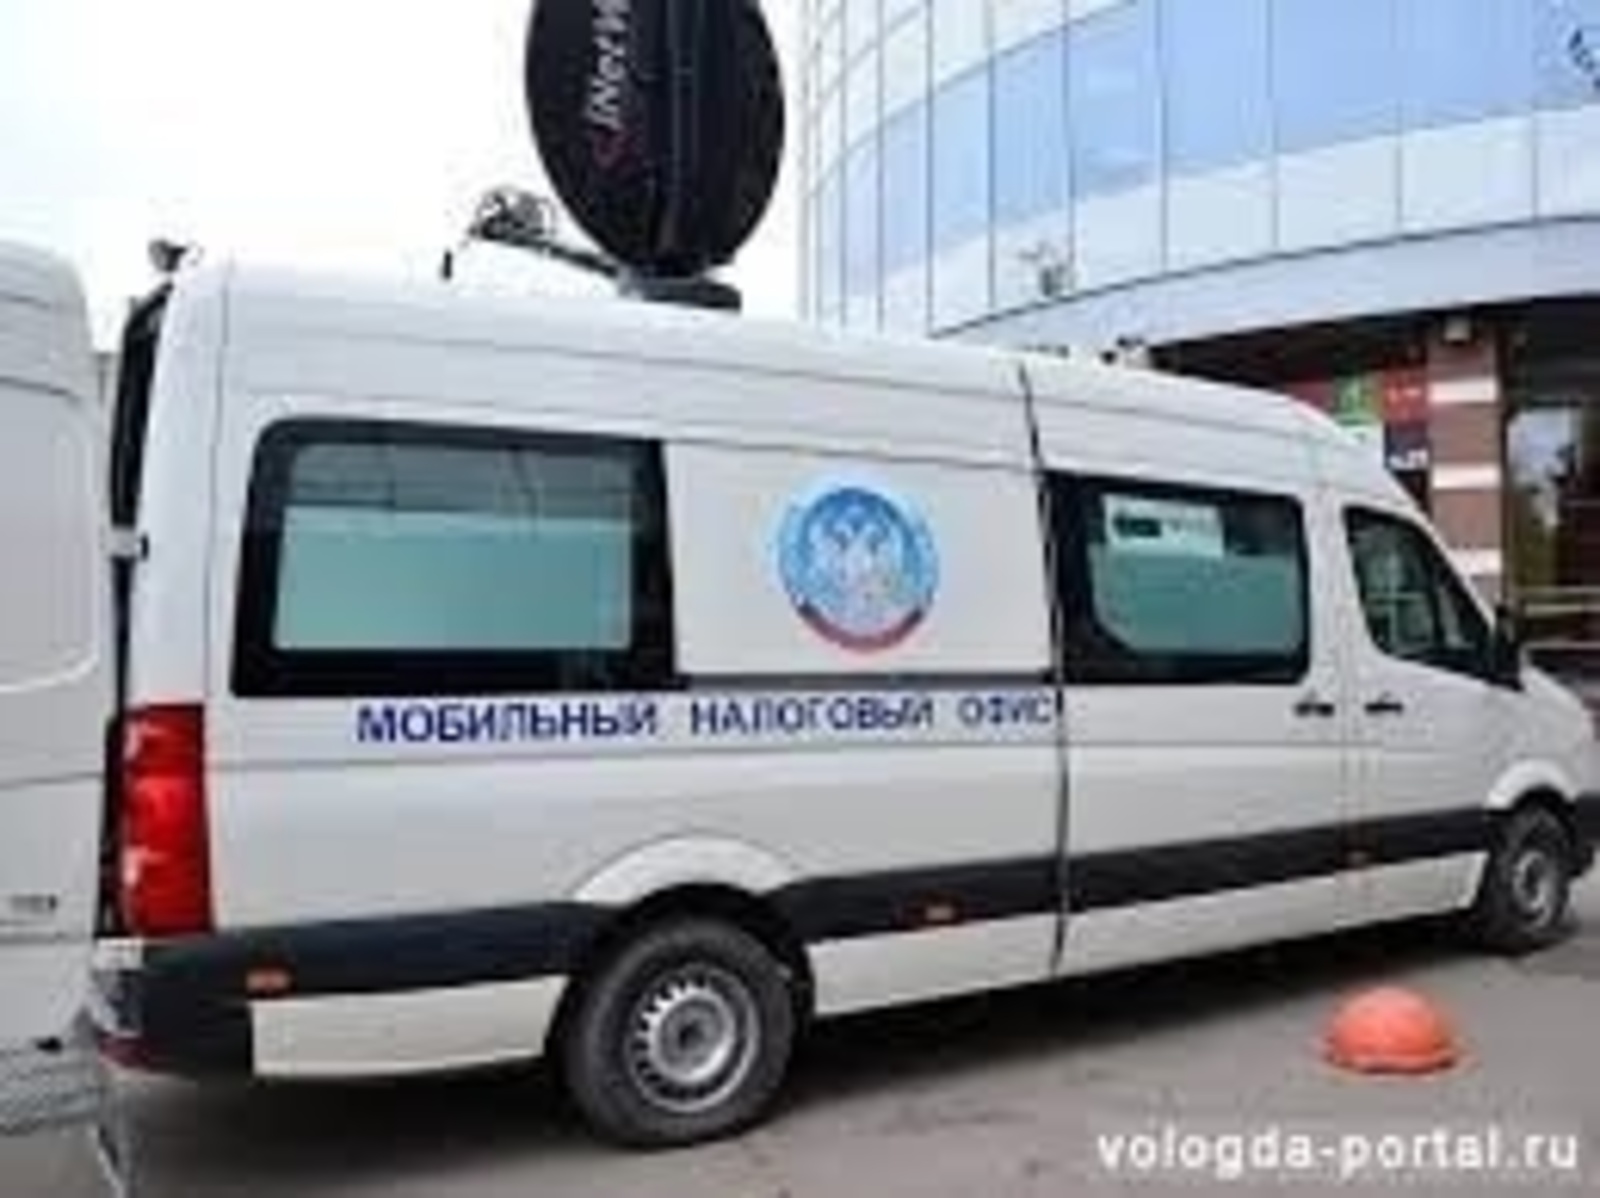 Мобильный налоговый офис едет в Кармаскалинский район Республики Башкортостан